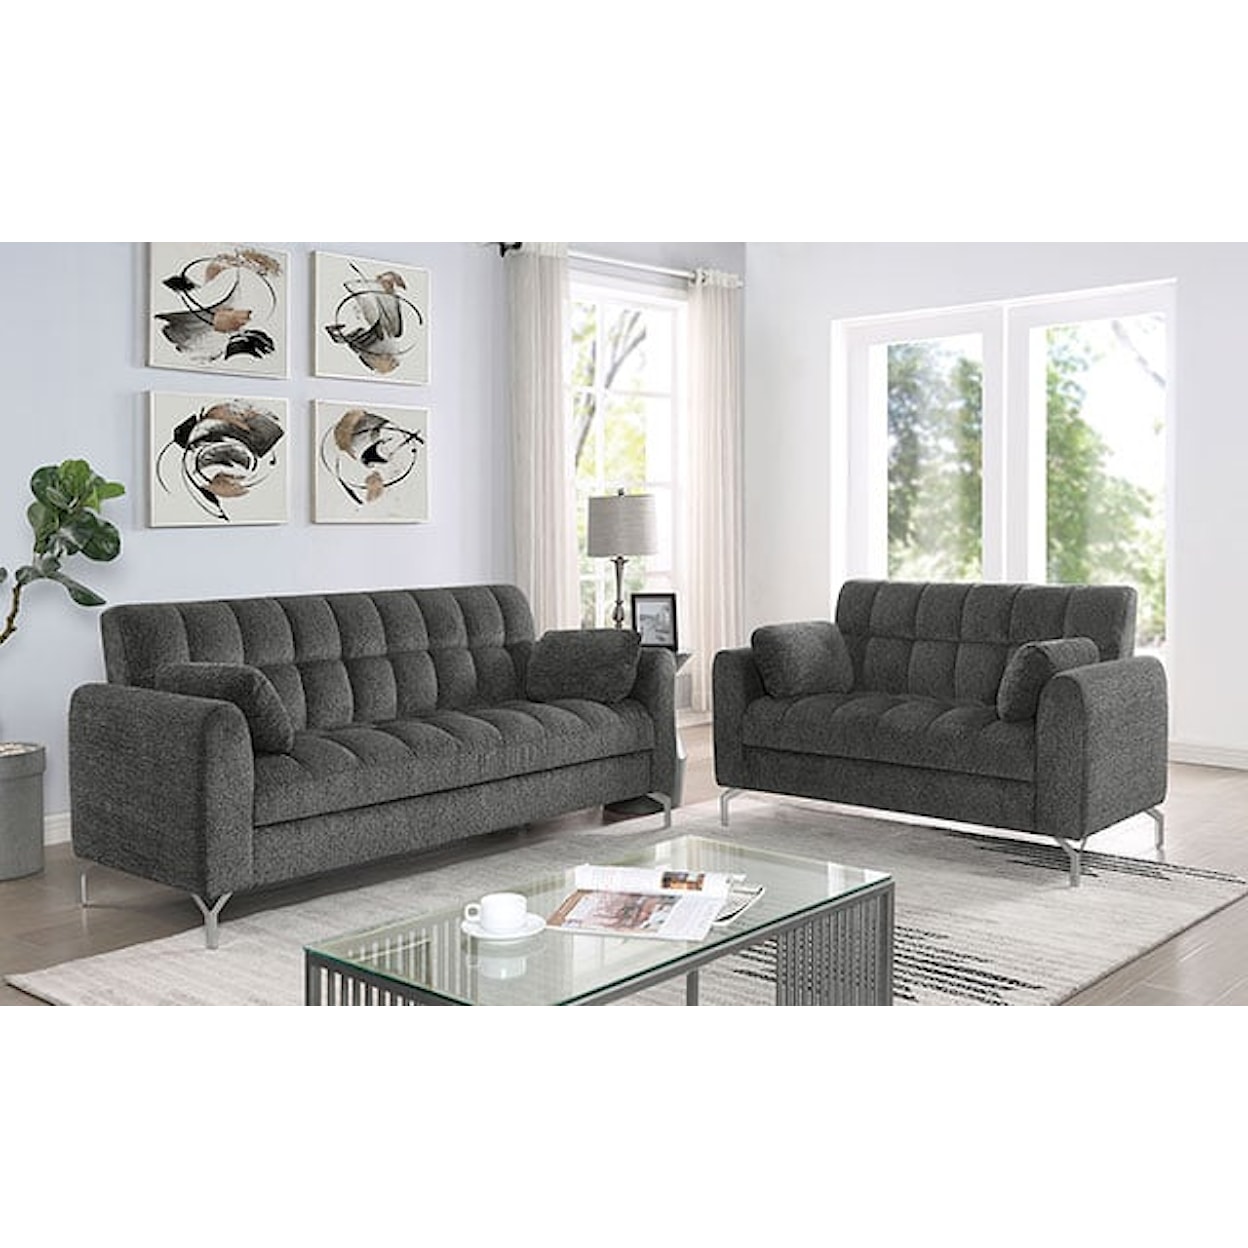 Furniture of America Lupin Sofa